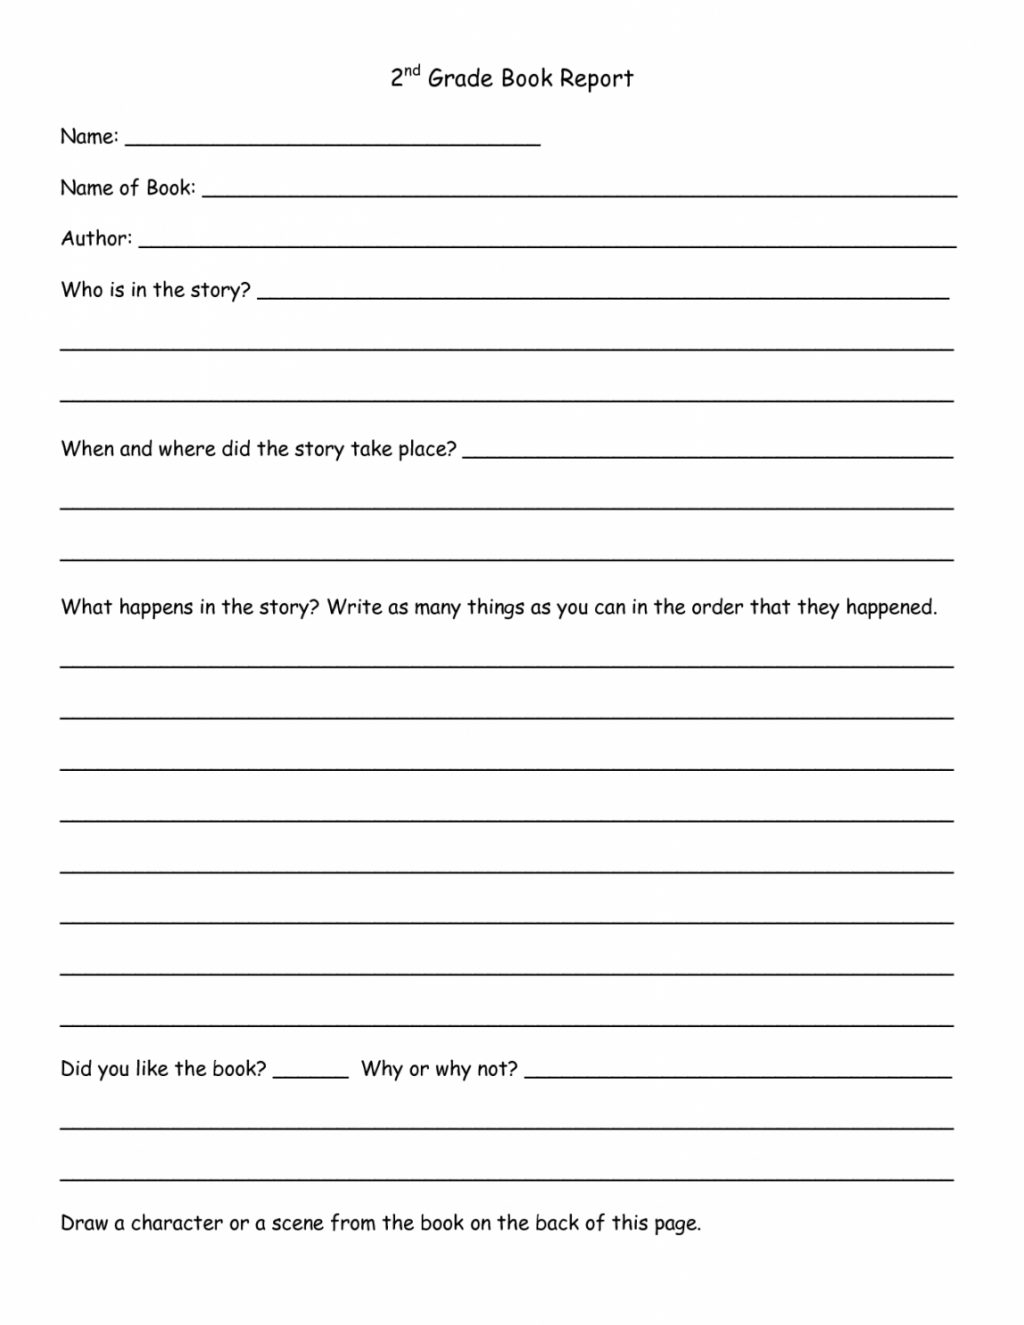 Worksheet Ideas ~ Book Report Template 1St Grade Kola Throughout 1St Grade Book Report Template